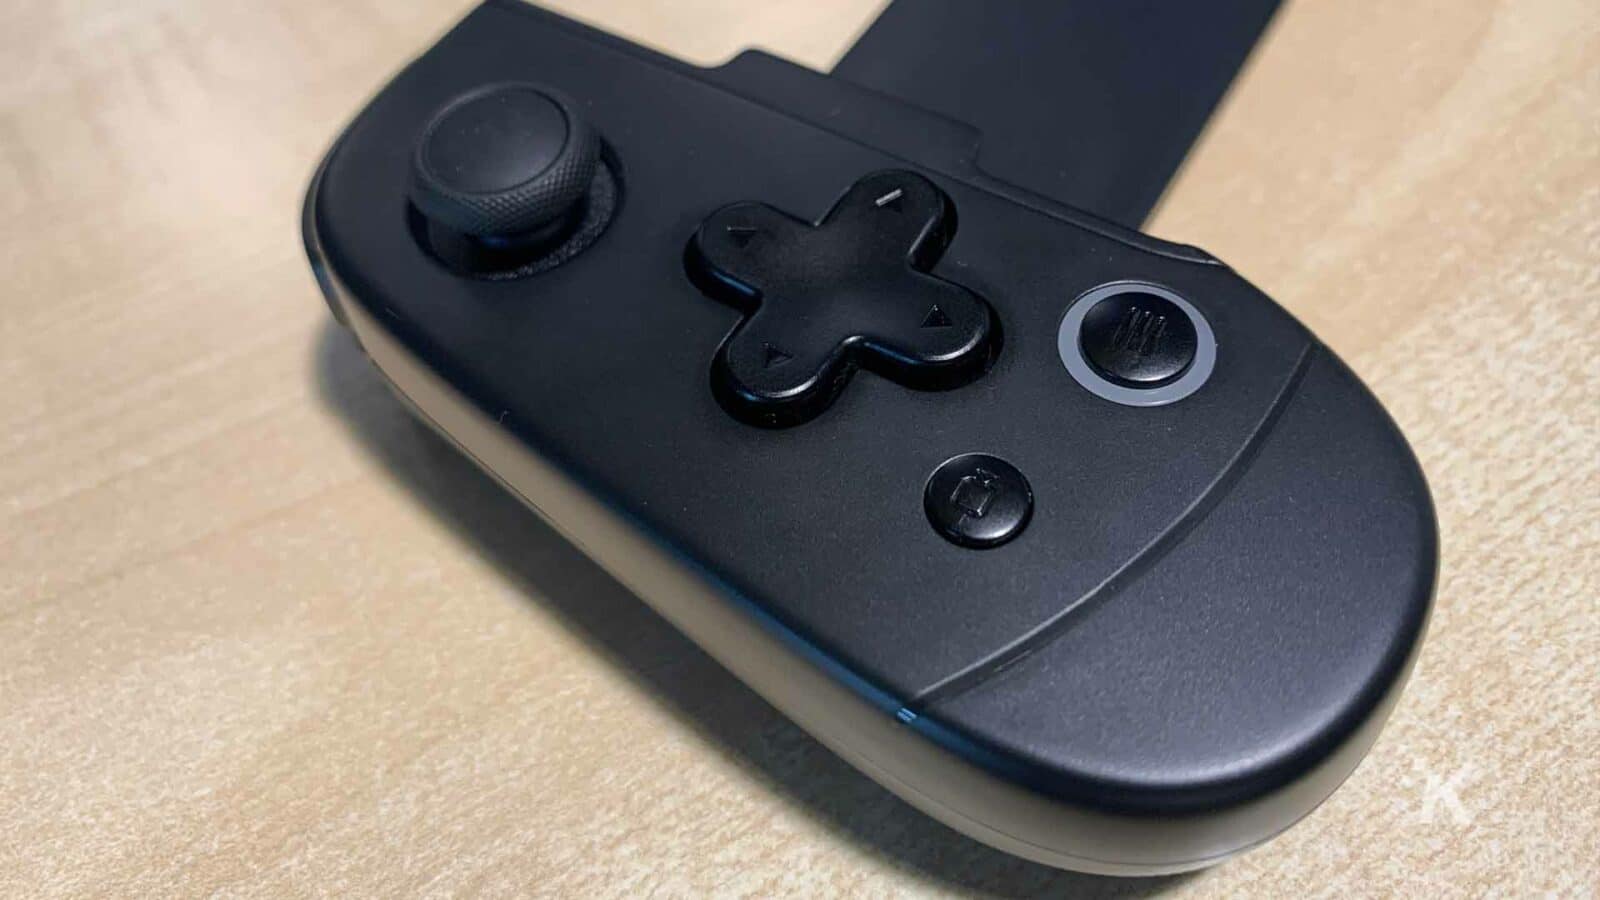 Viene utilizzato il controller per videogiochi nero.